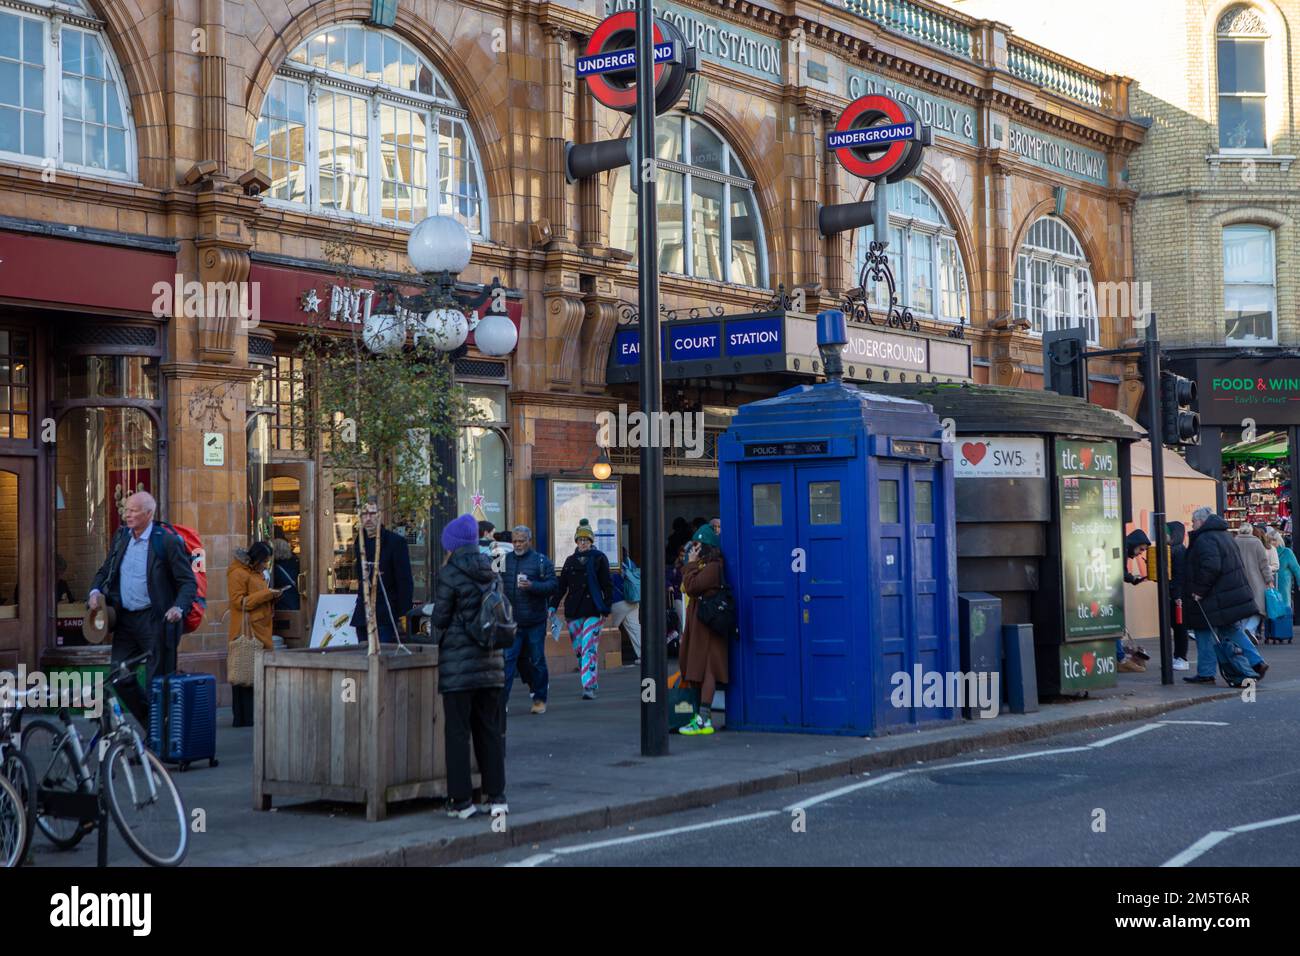 London, England – Eine blaue Polizei-Telefonzelle auf der Straße in London, verbunden mit dem Science-Fiction-Fernsehprogramm Doctor Who als sein Camouf Stockfoto